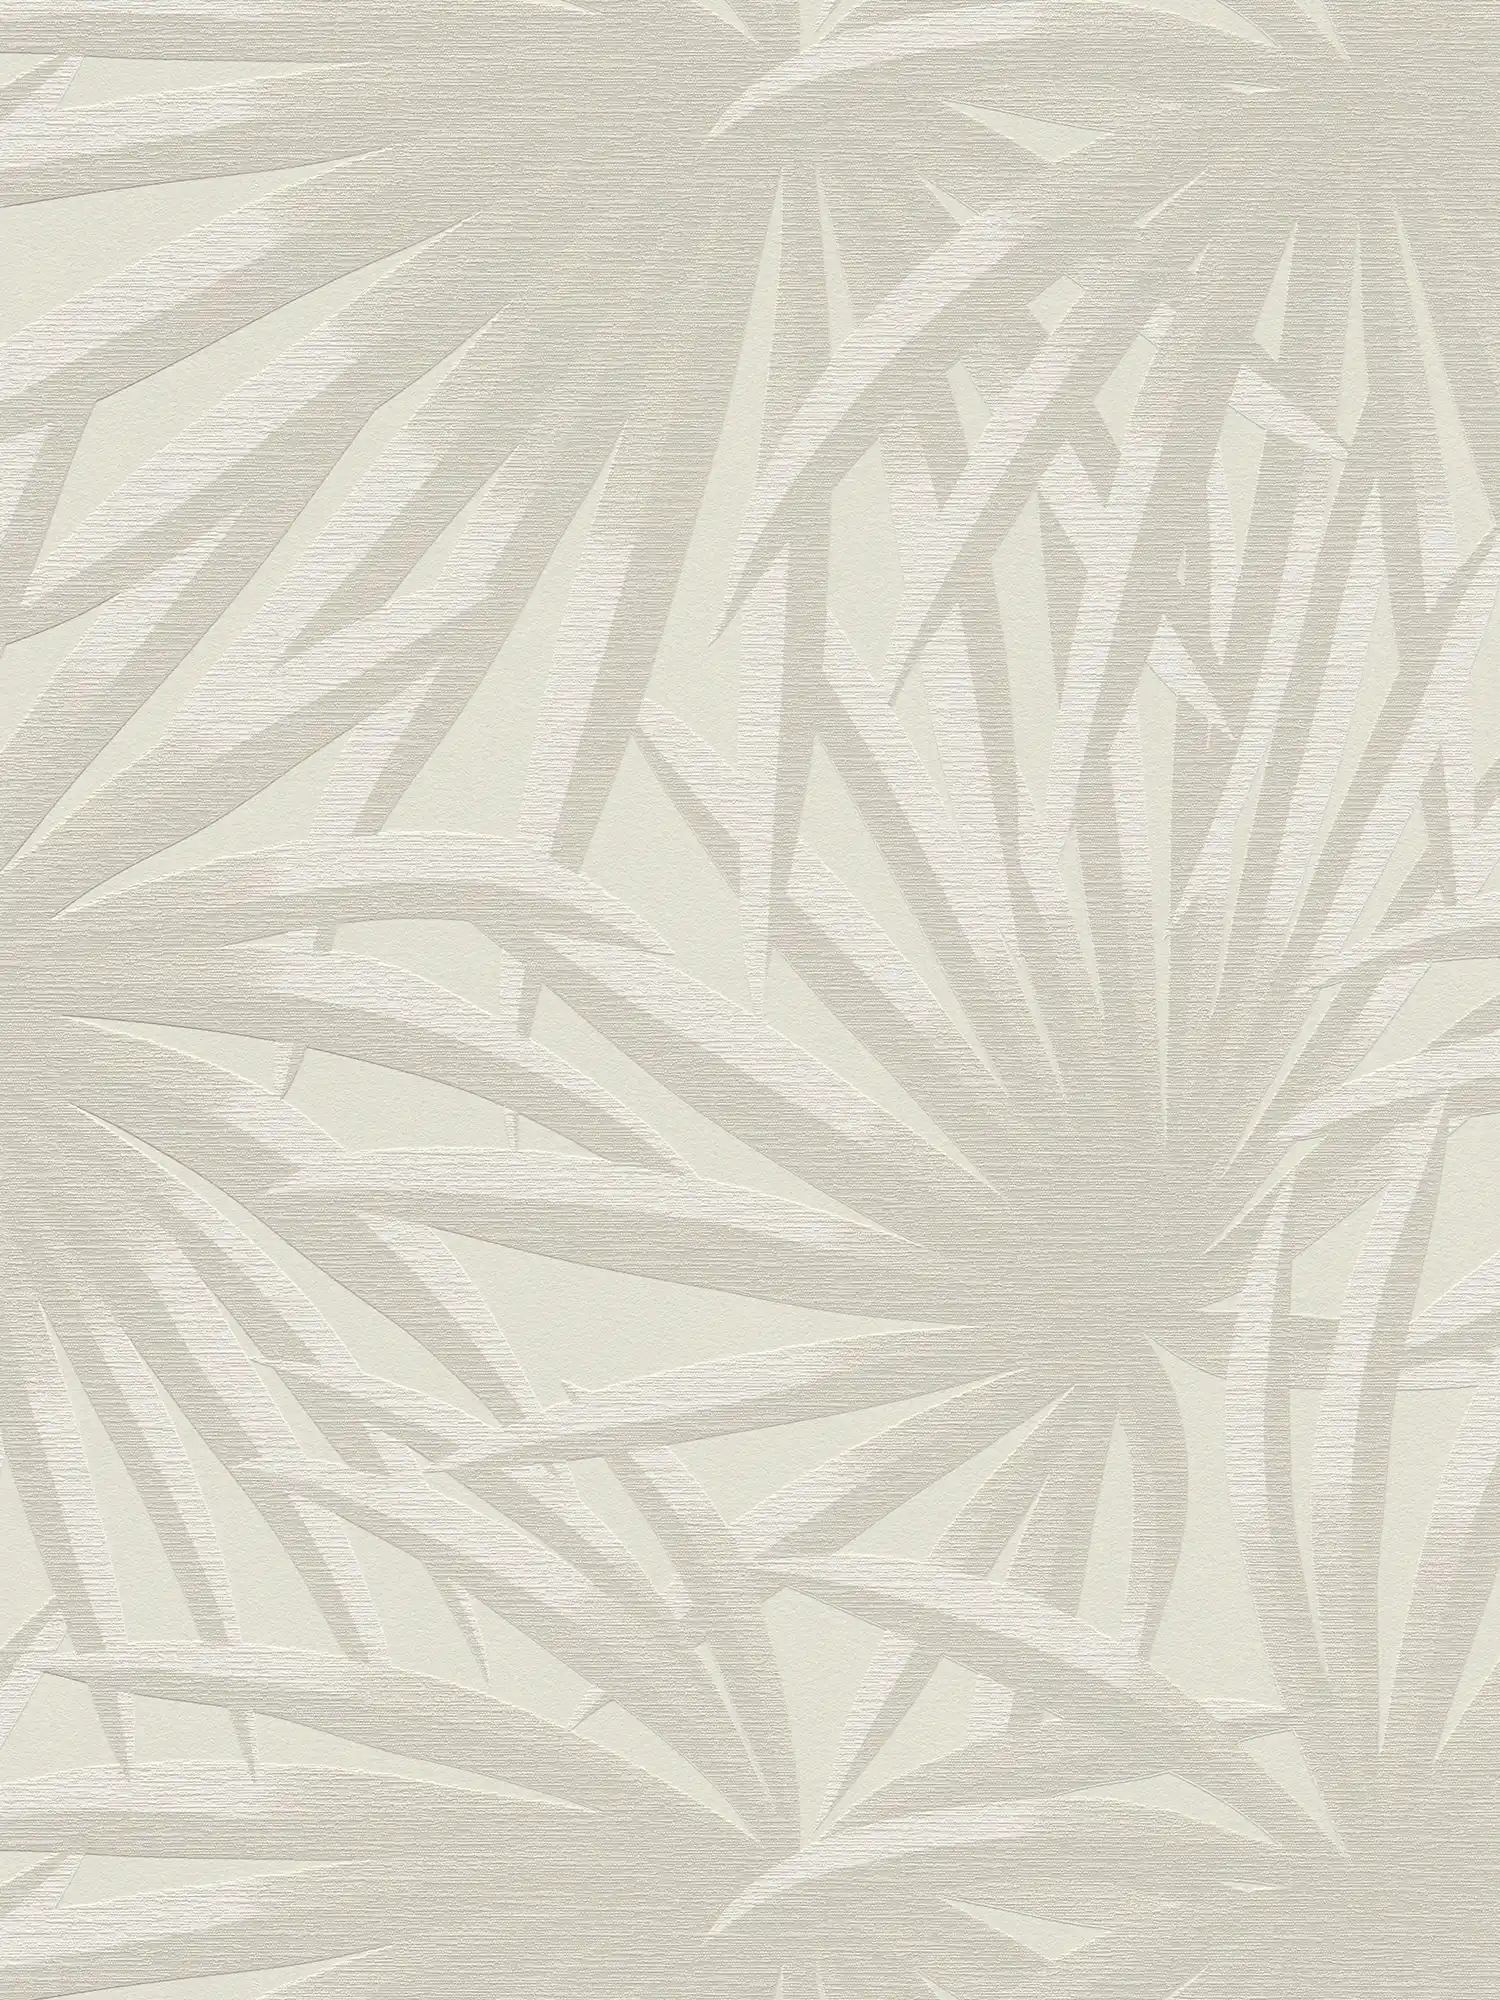 Vliesbehang met palmbladerenpatroon in zachte kleuren - crème, lichtgrijs
